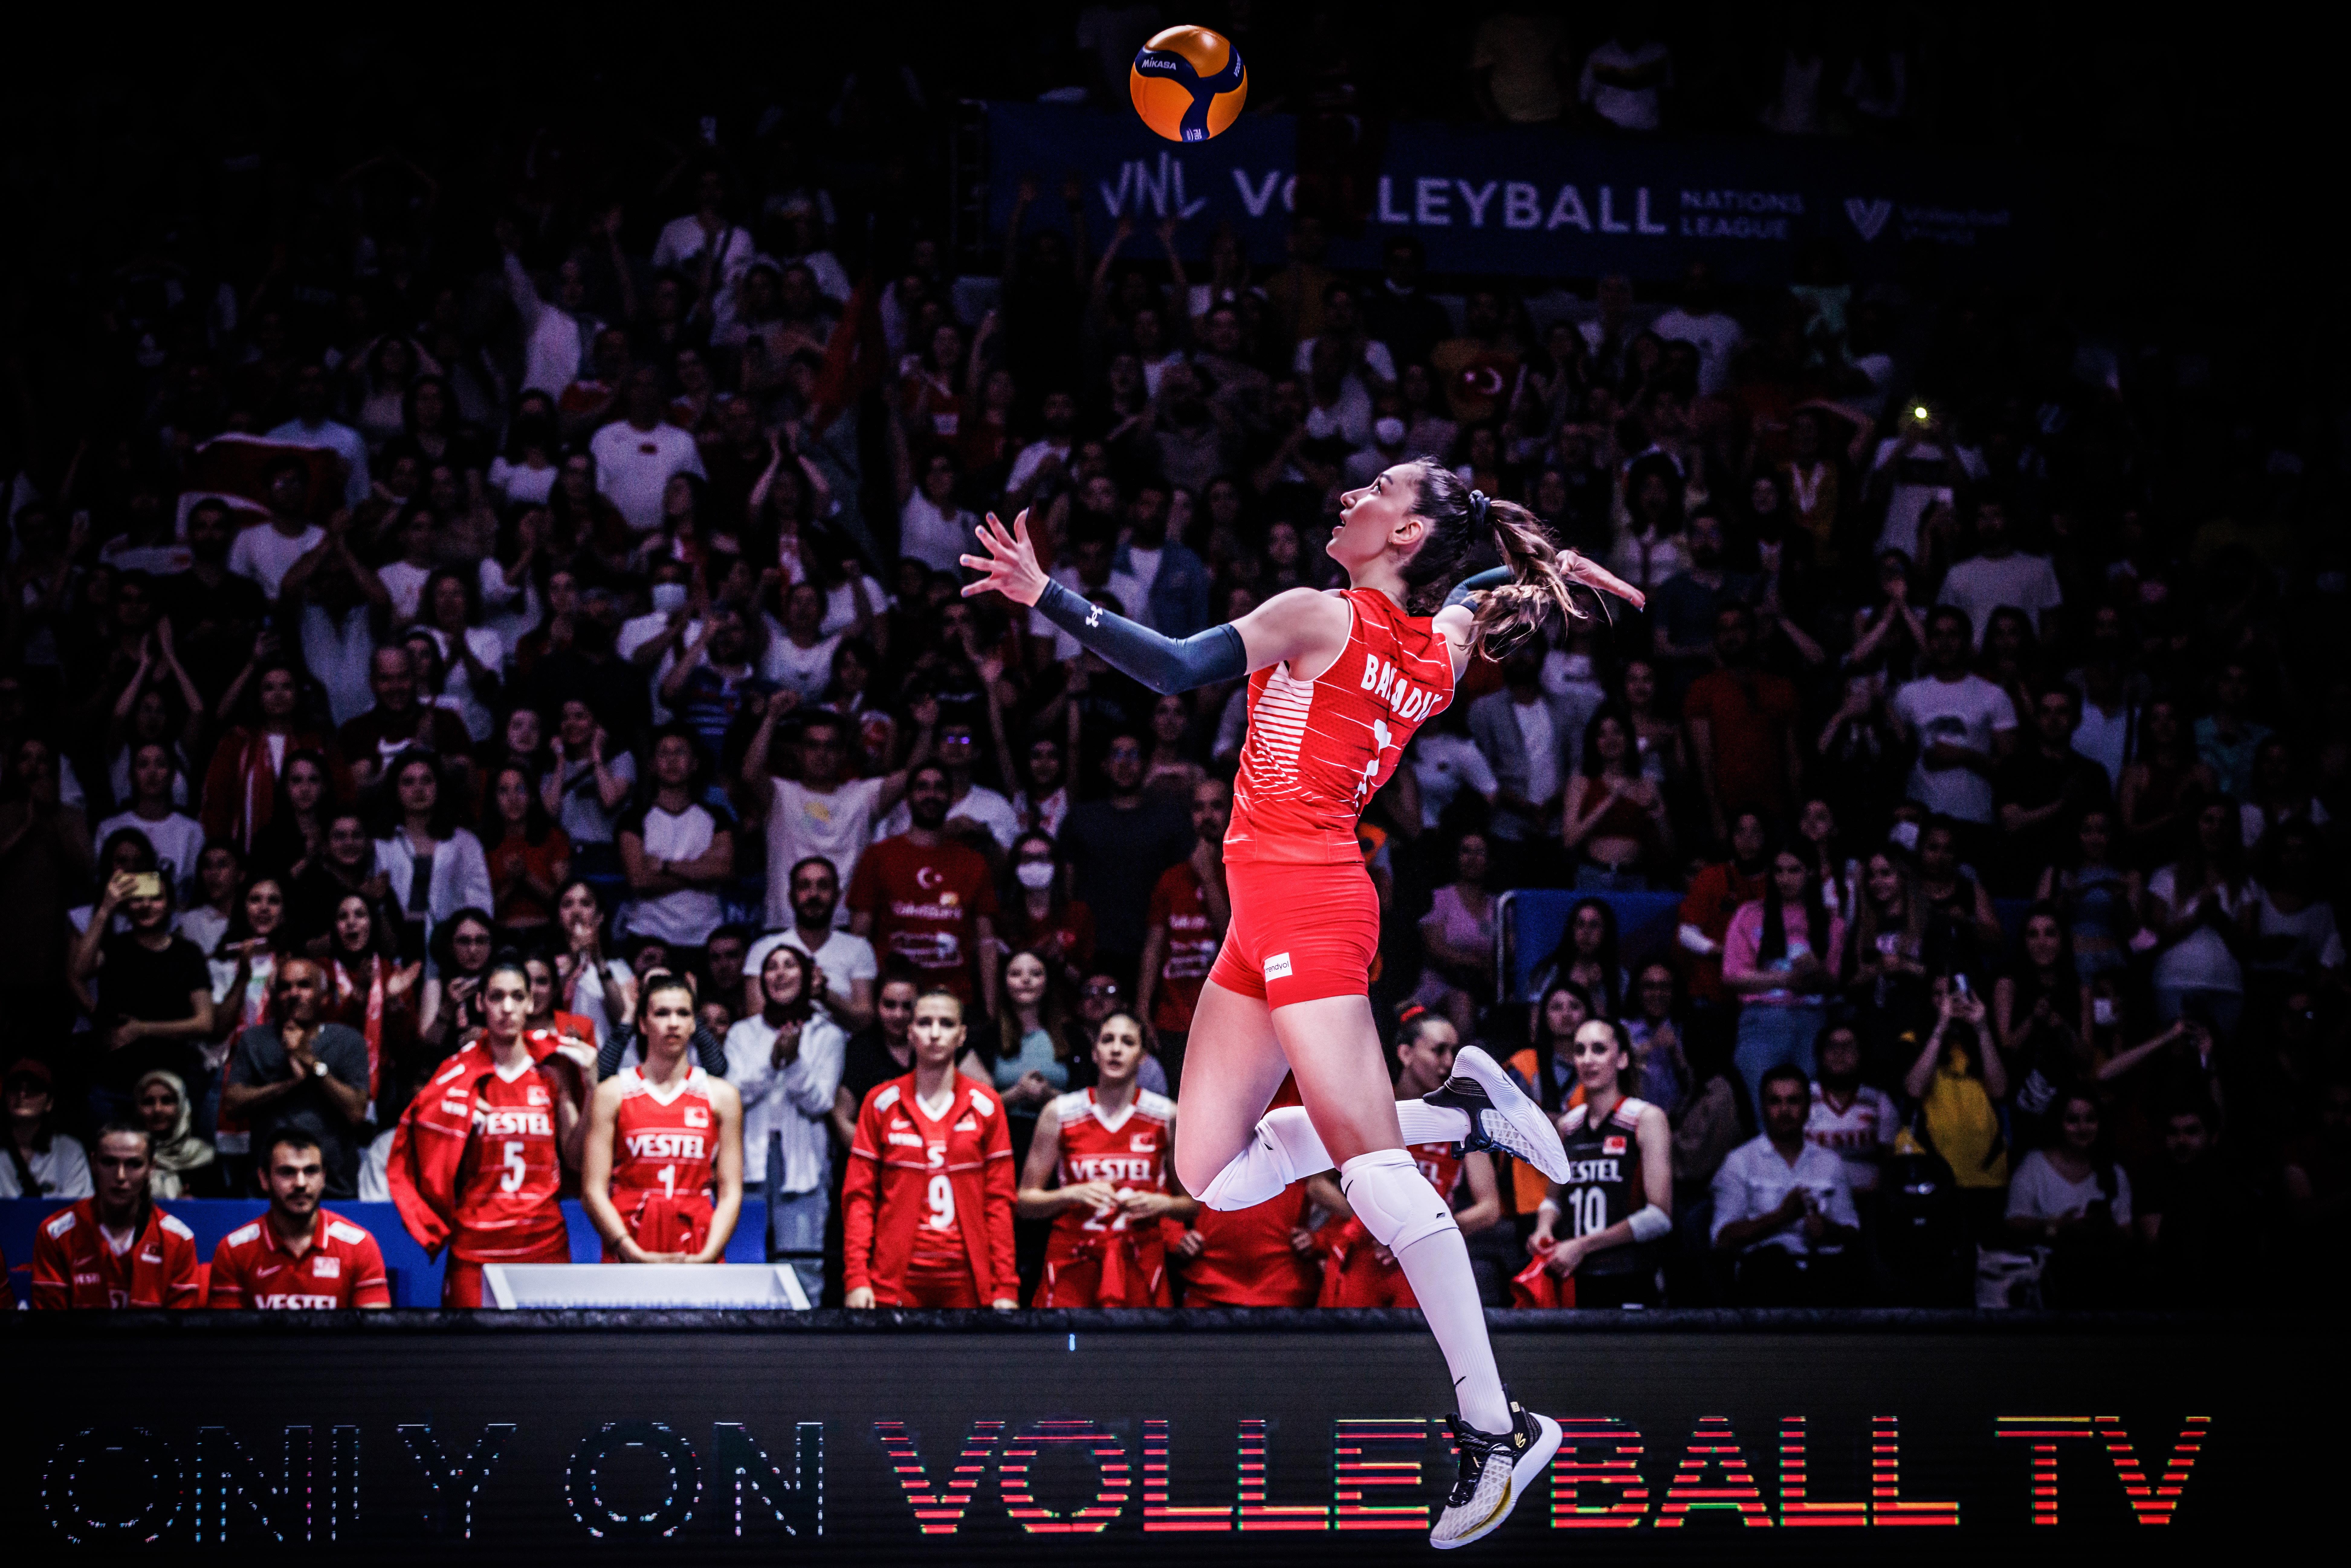 Fantastic crowd inspires Türkiye to first VNL win volleyballworld